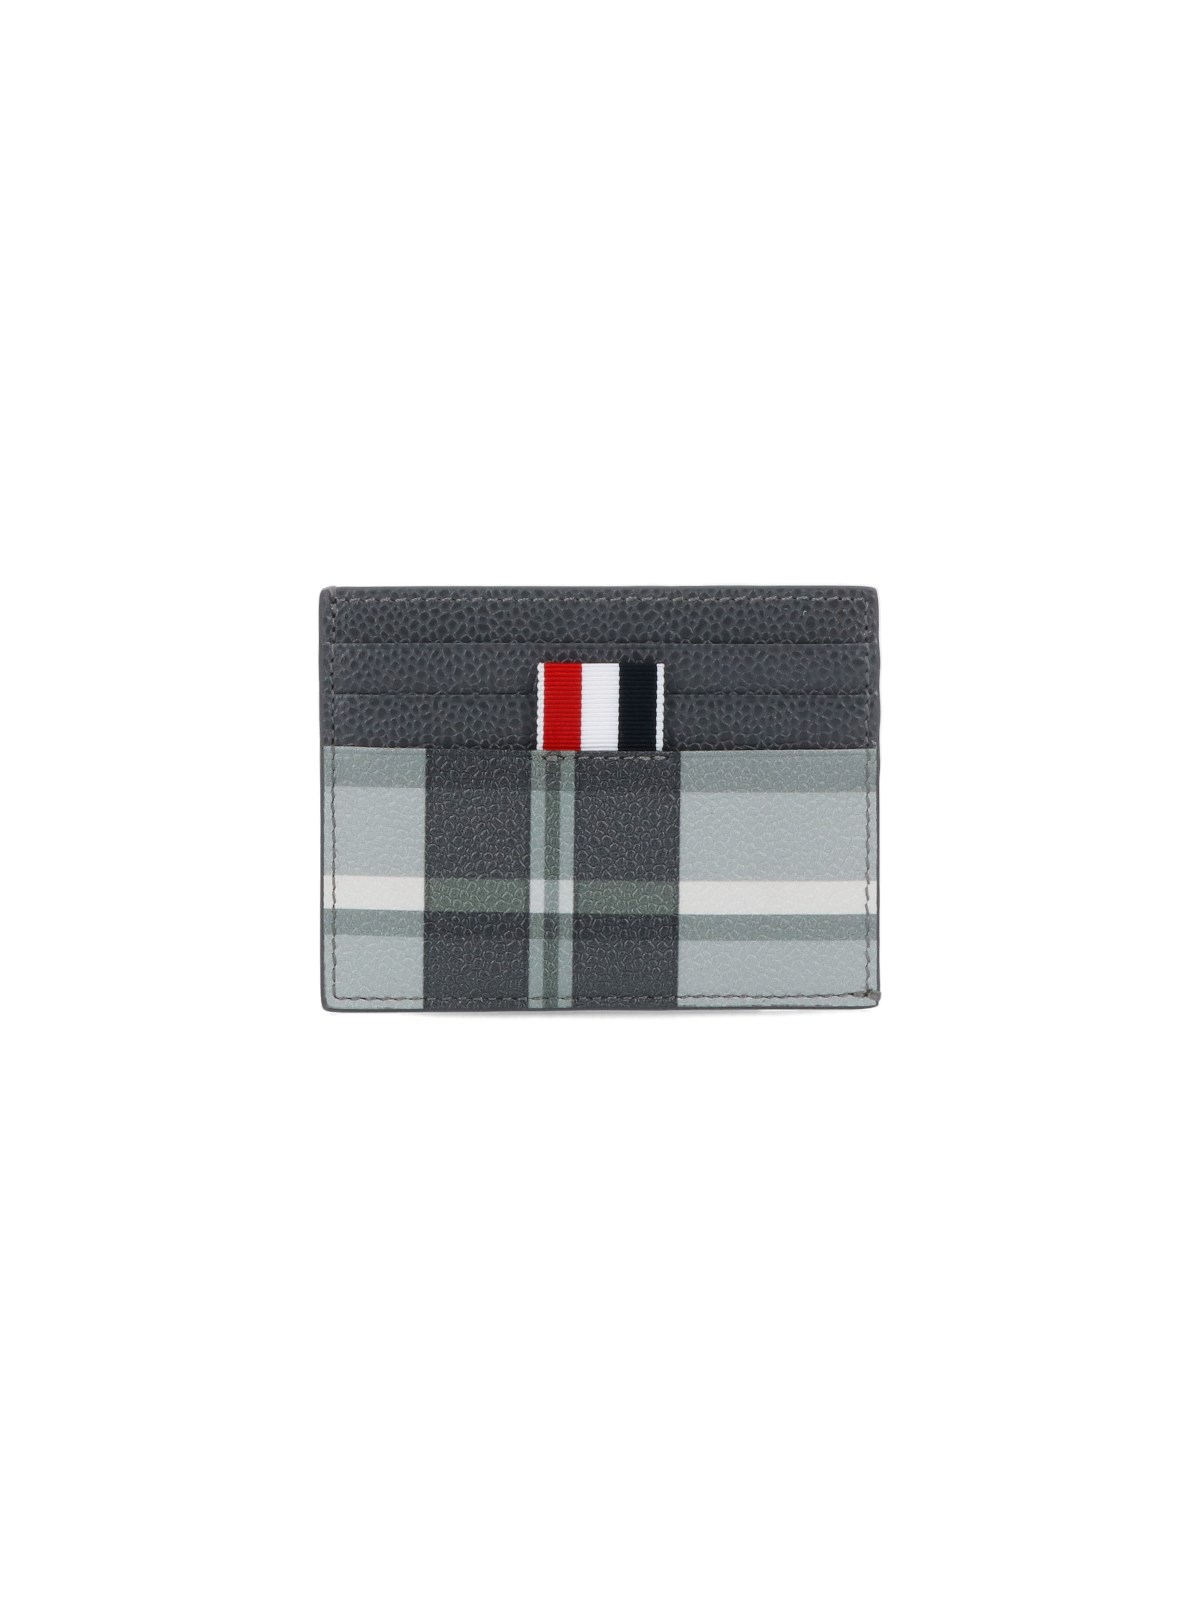 Thom Browne "4 Bar" Card Holder In Grey